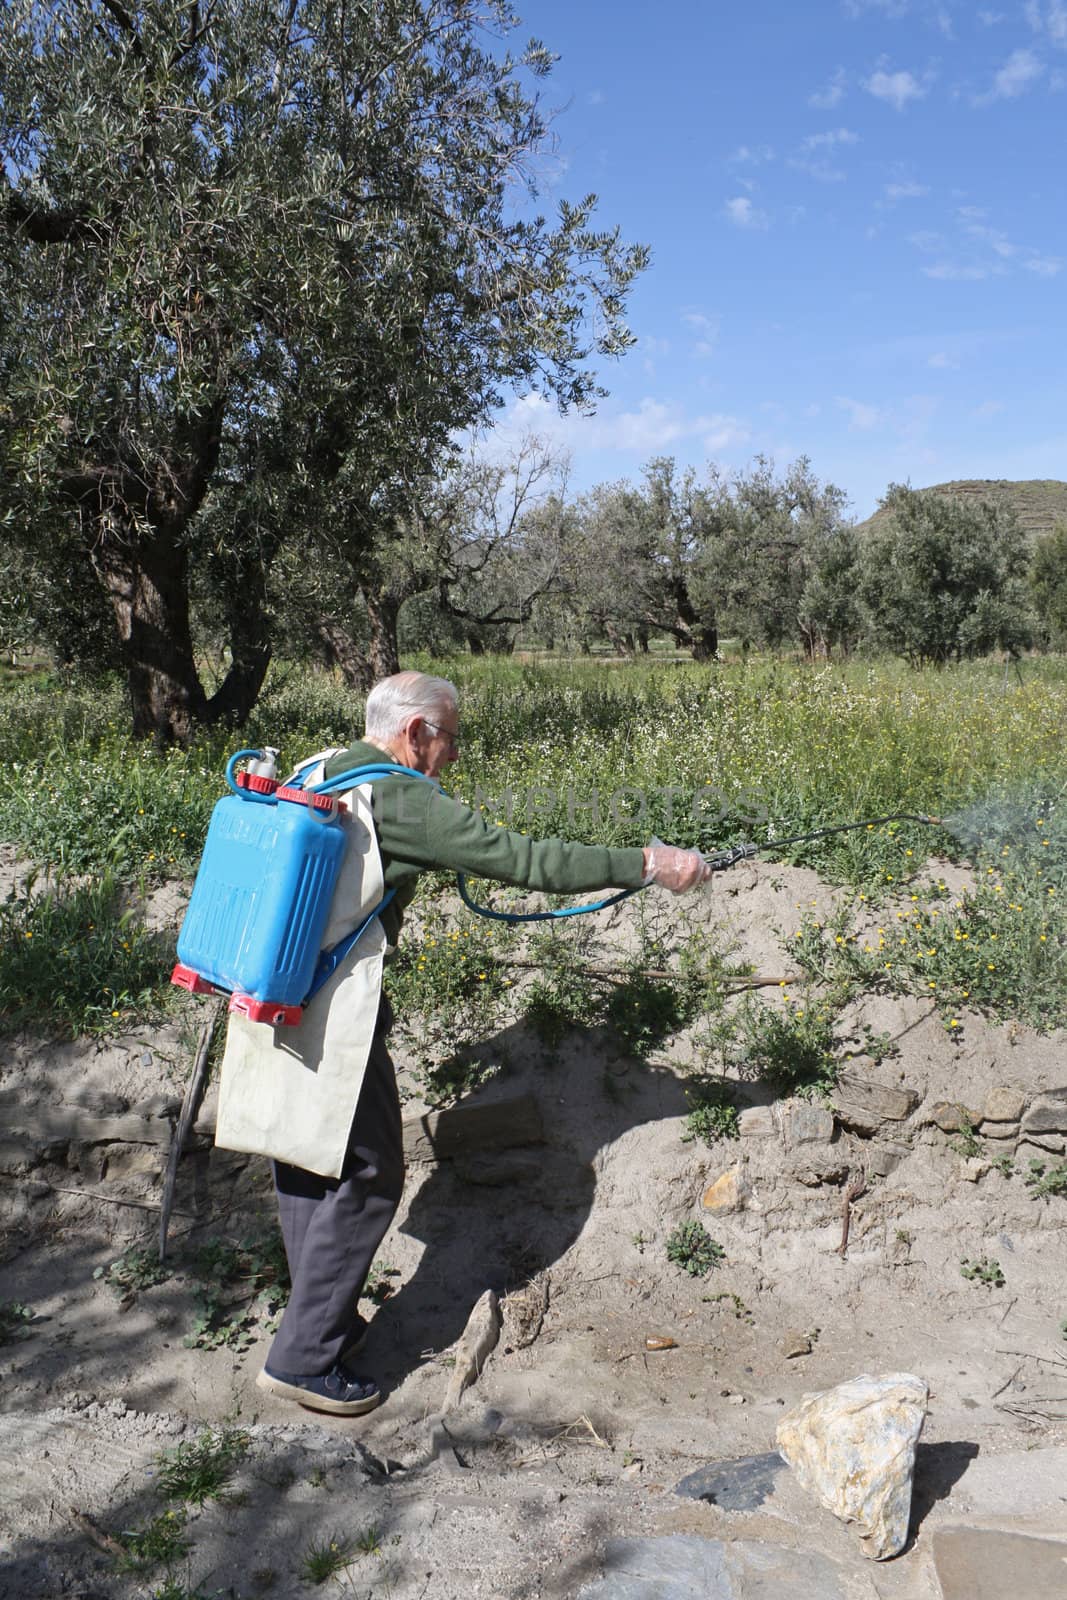 Elderly farmer spraying weed pesticide by Brigida_Soriano